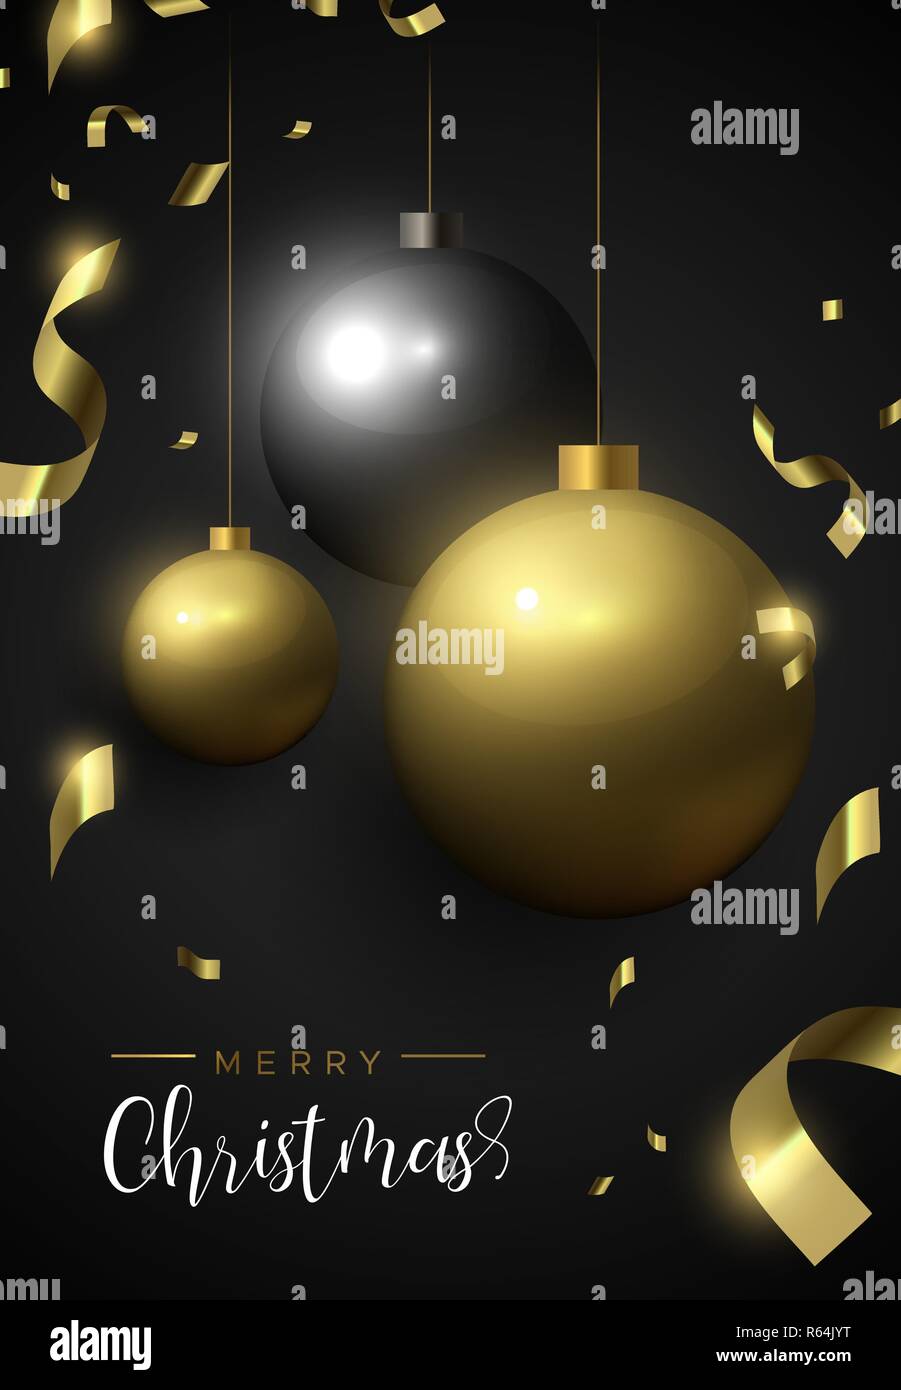 Merry Christmas Card, Gold und Schwarz xmas bauble Ornamente. Luxus Urlaub Kugeln Hintergrund für die Einladung oder Jahreszeiten Gruß. Stock Vektor